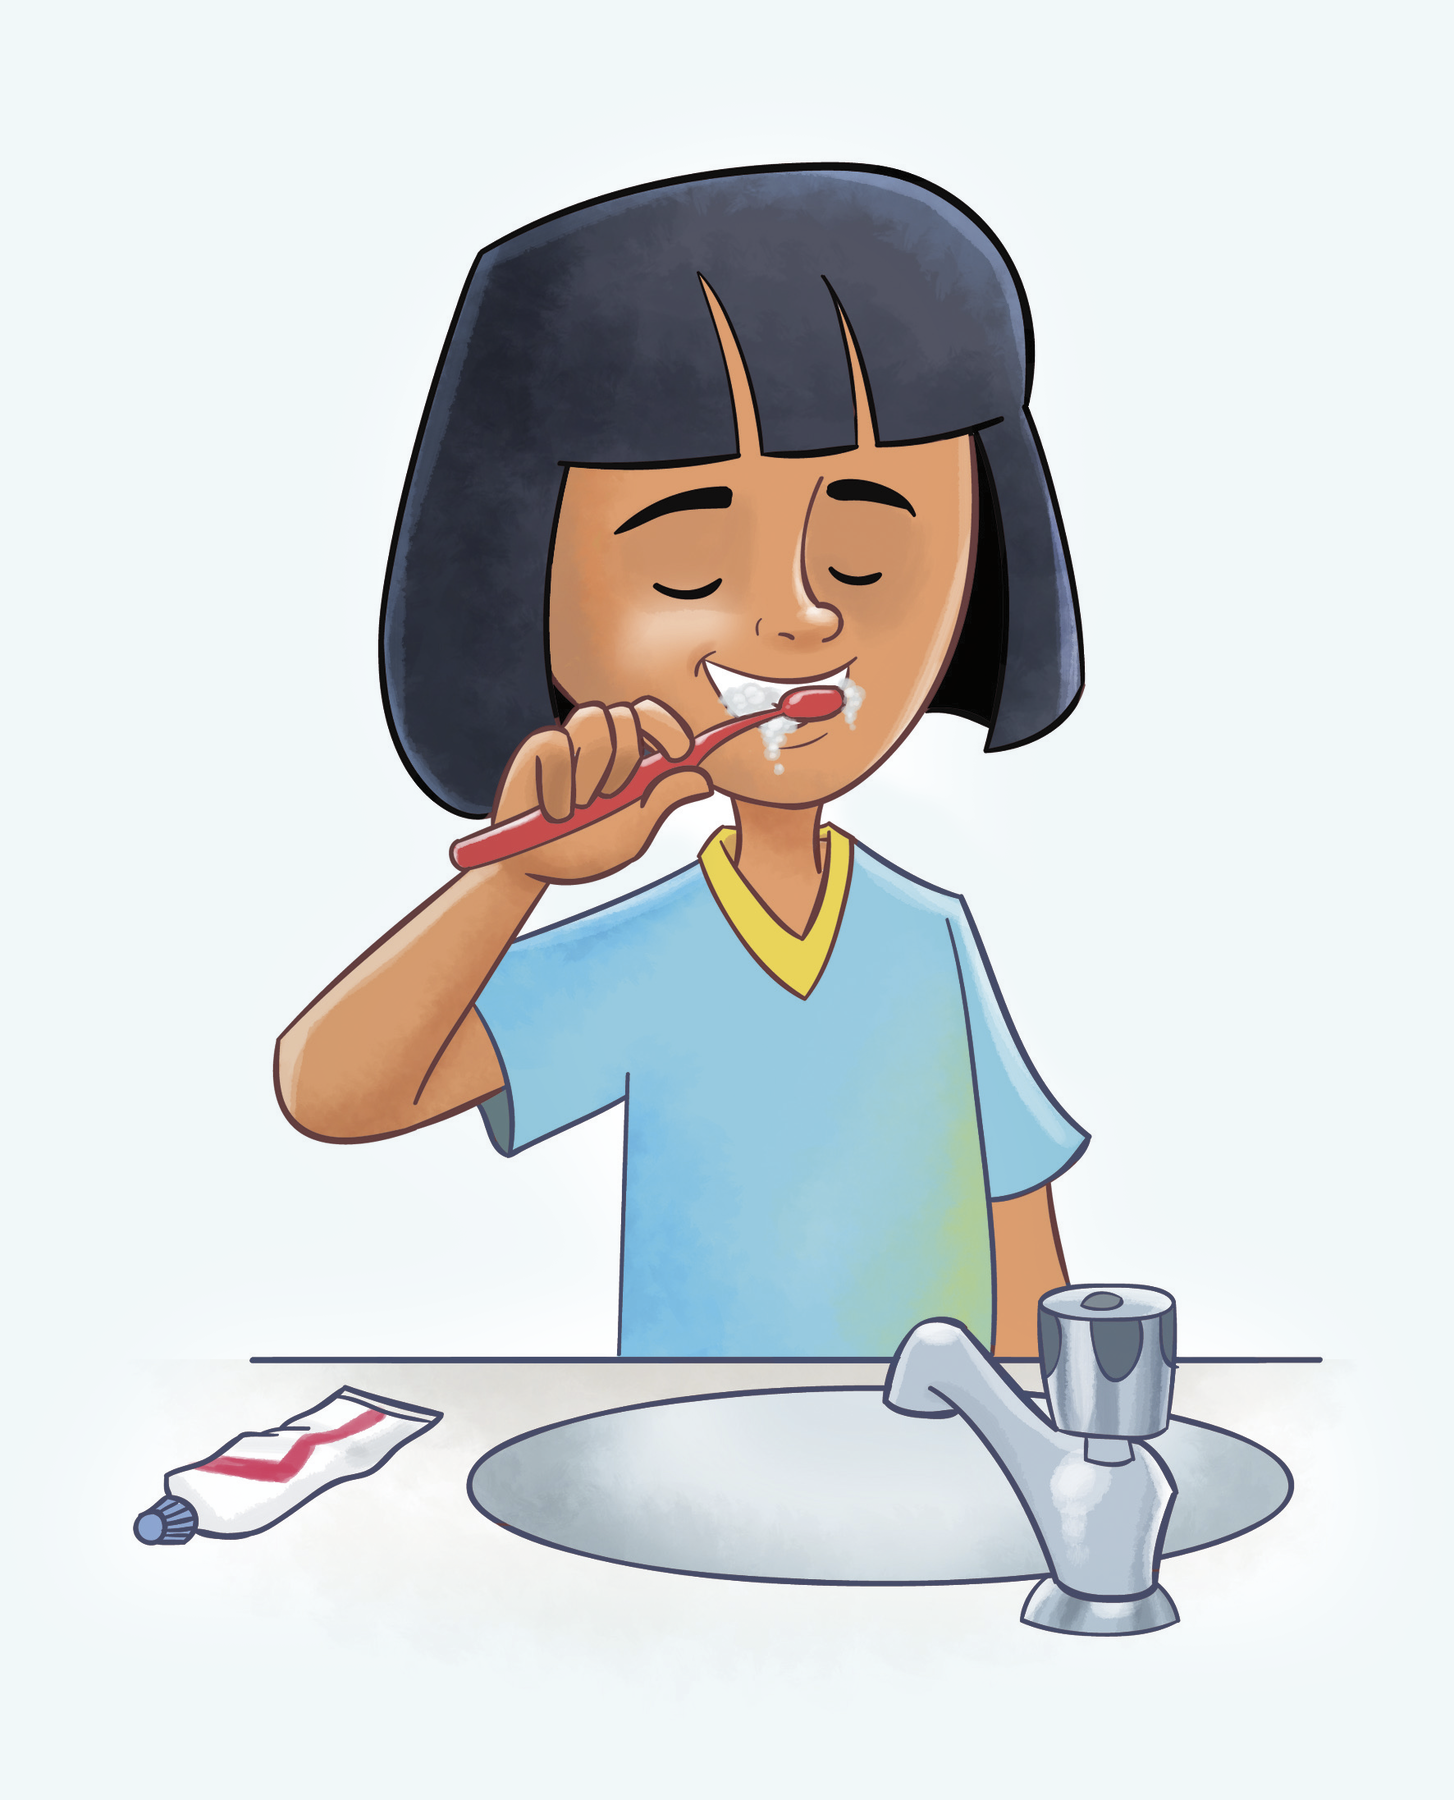 Ilustração. Menina de cabelo preto liso e blusa azul escovando os dentes. A torneira está fechada.